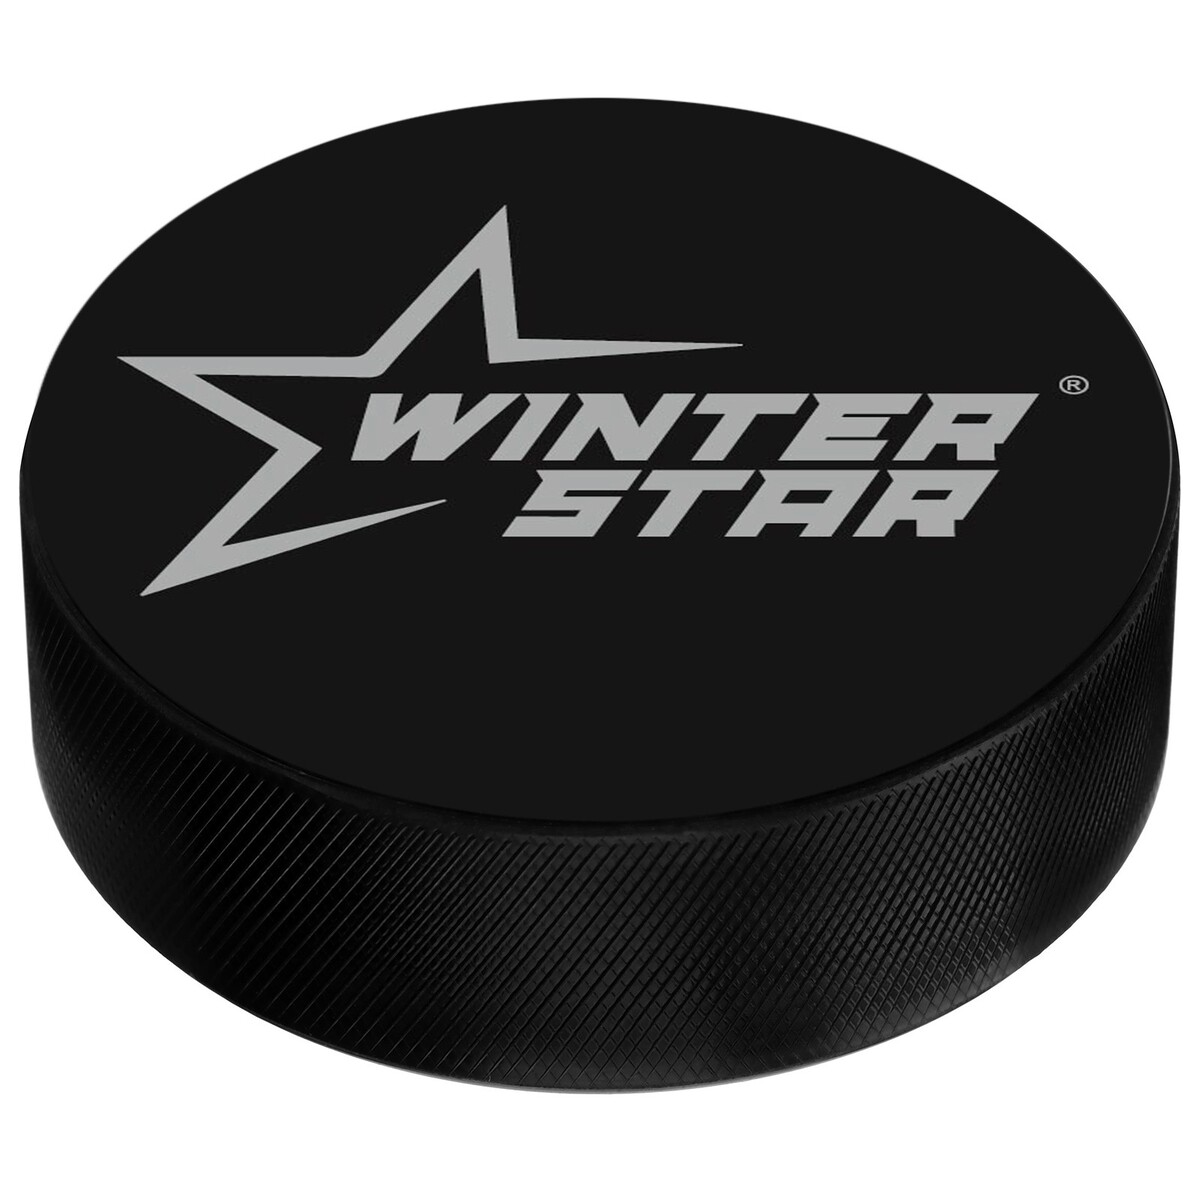 фото Шайба хоккейная winter star, детская, d=6 см